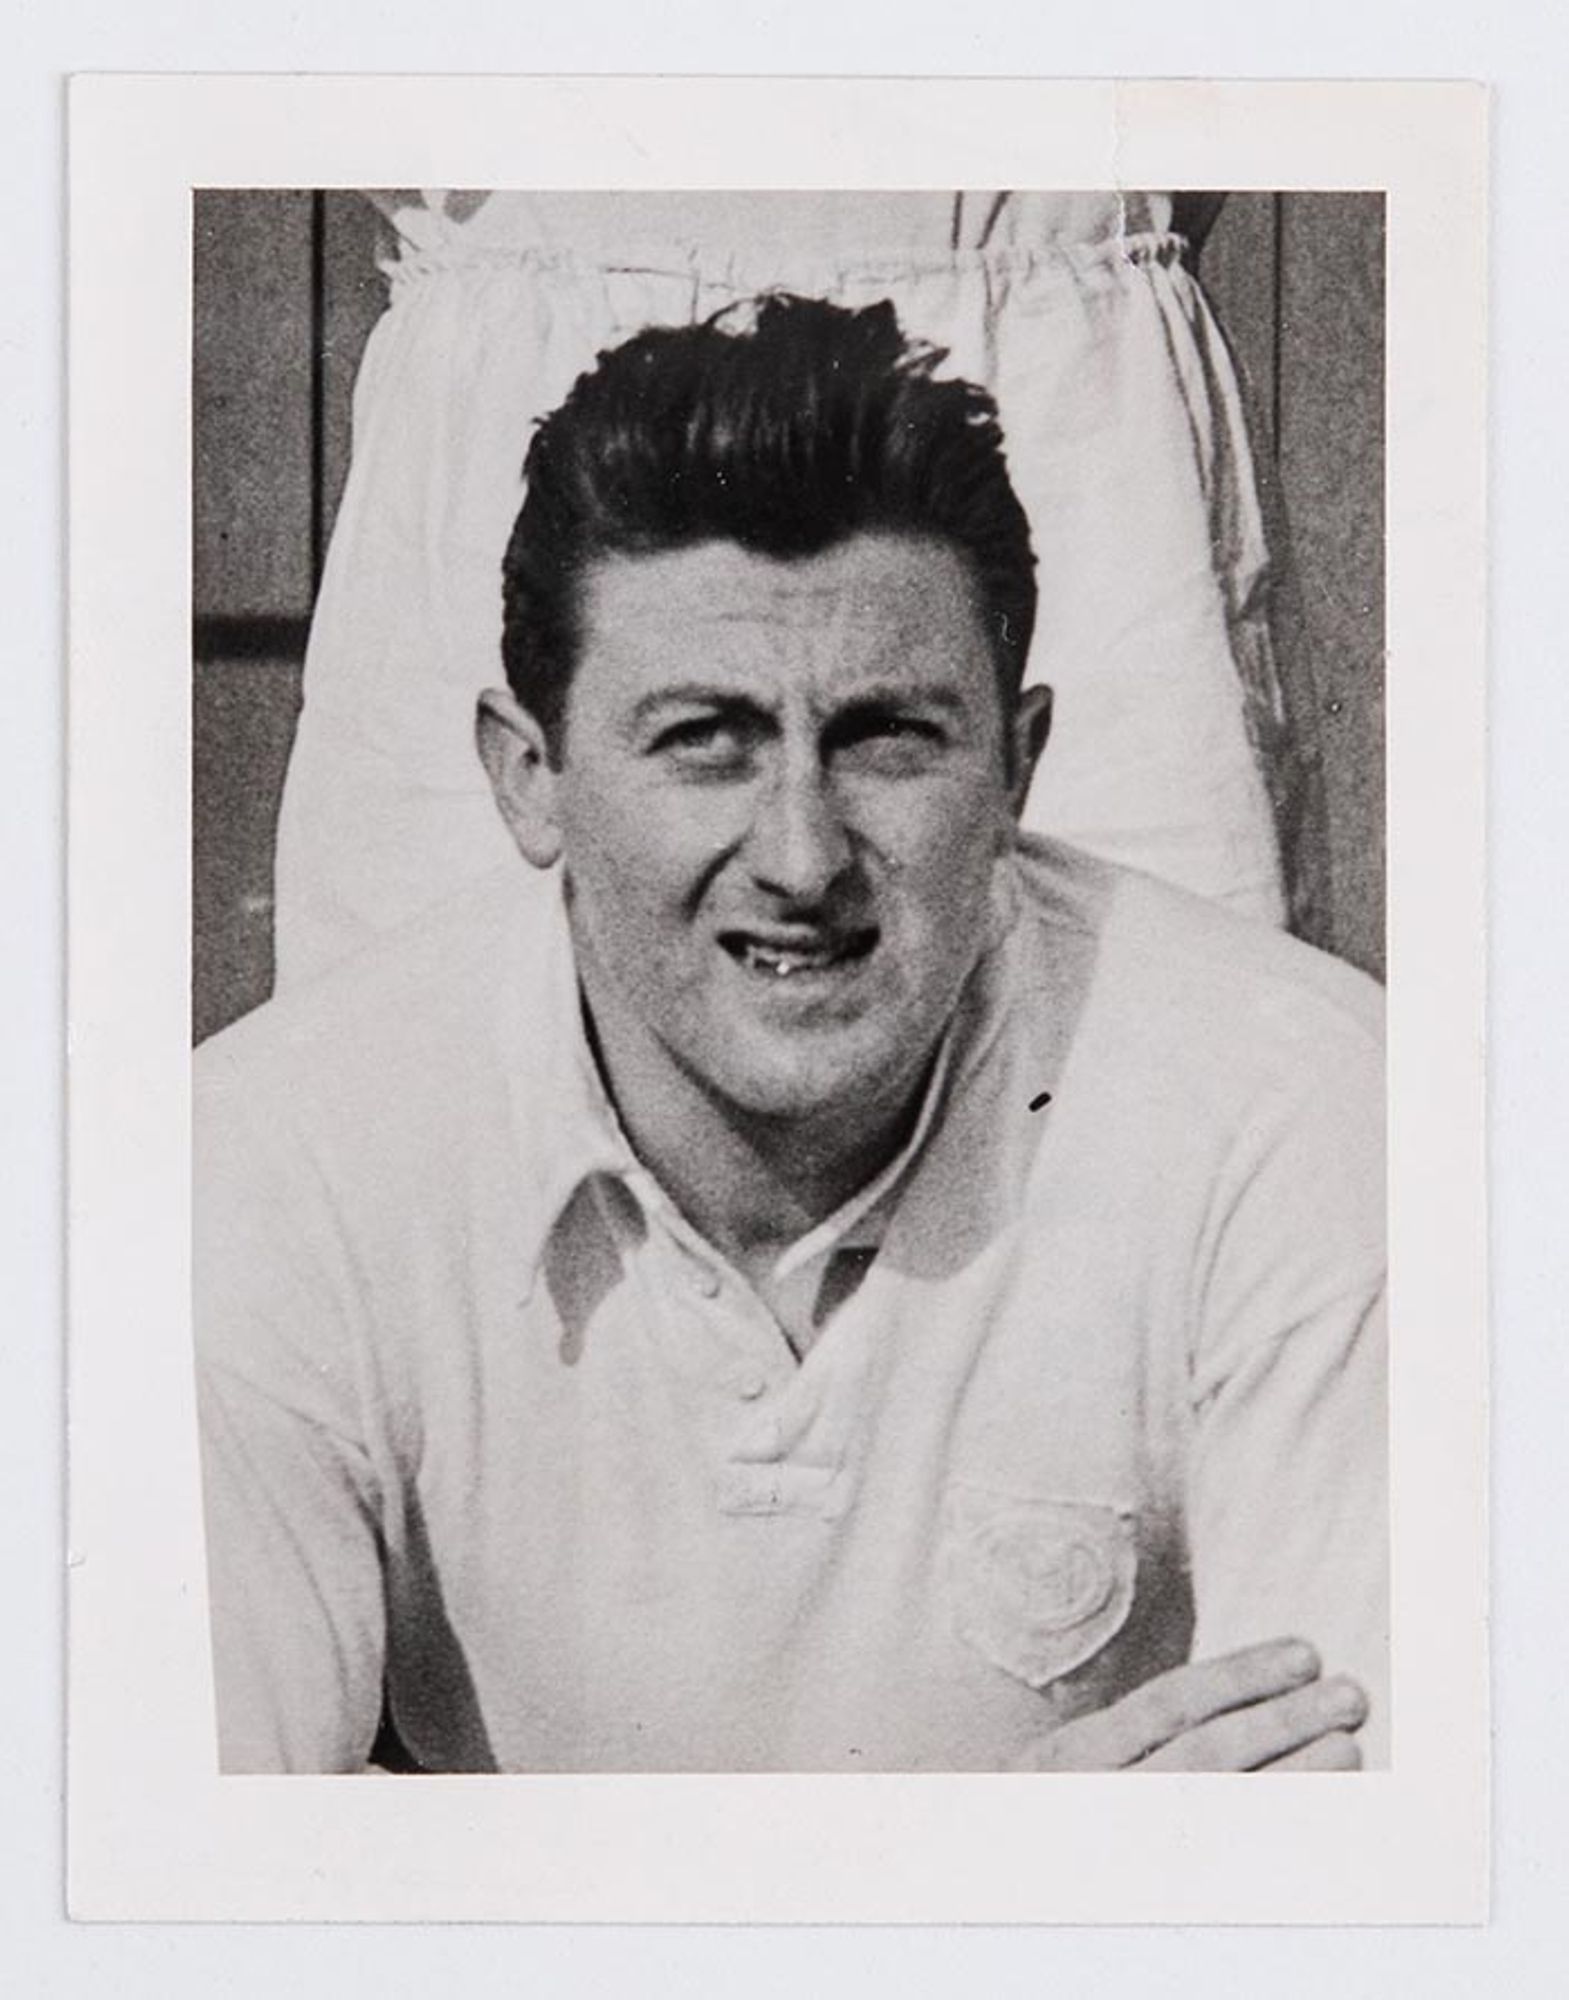 Portait de Pierre Flamion, joueur de l'Association sportive Troyes-Sainte-Savine de 1952 à 1957.